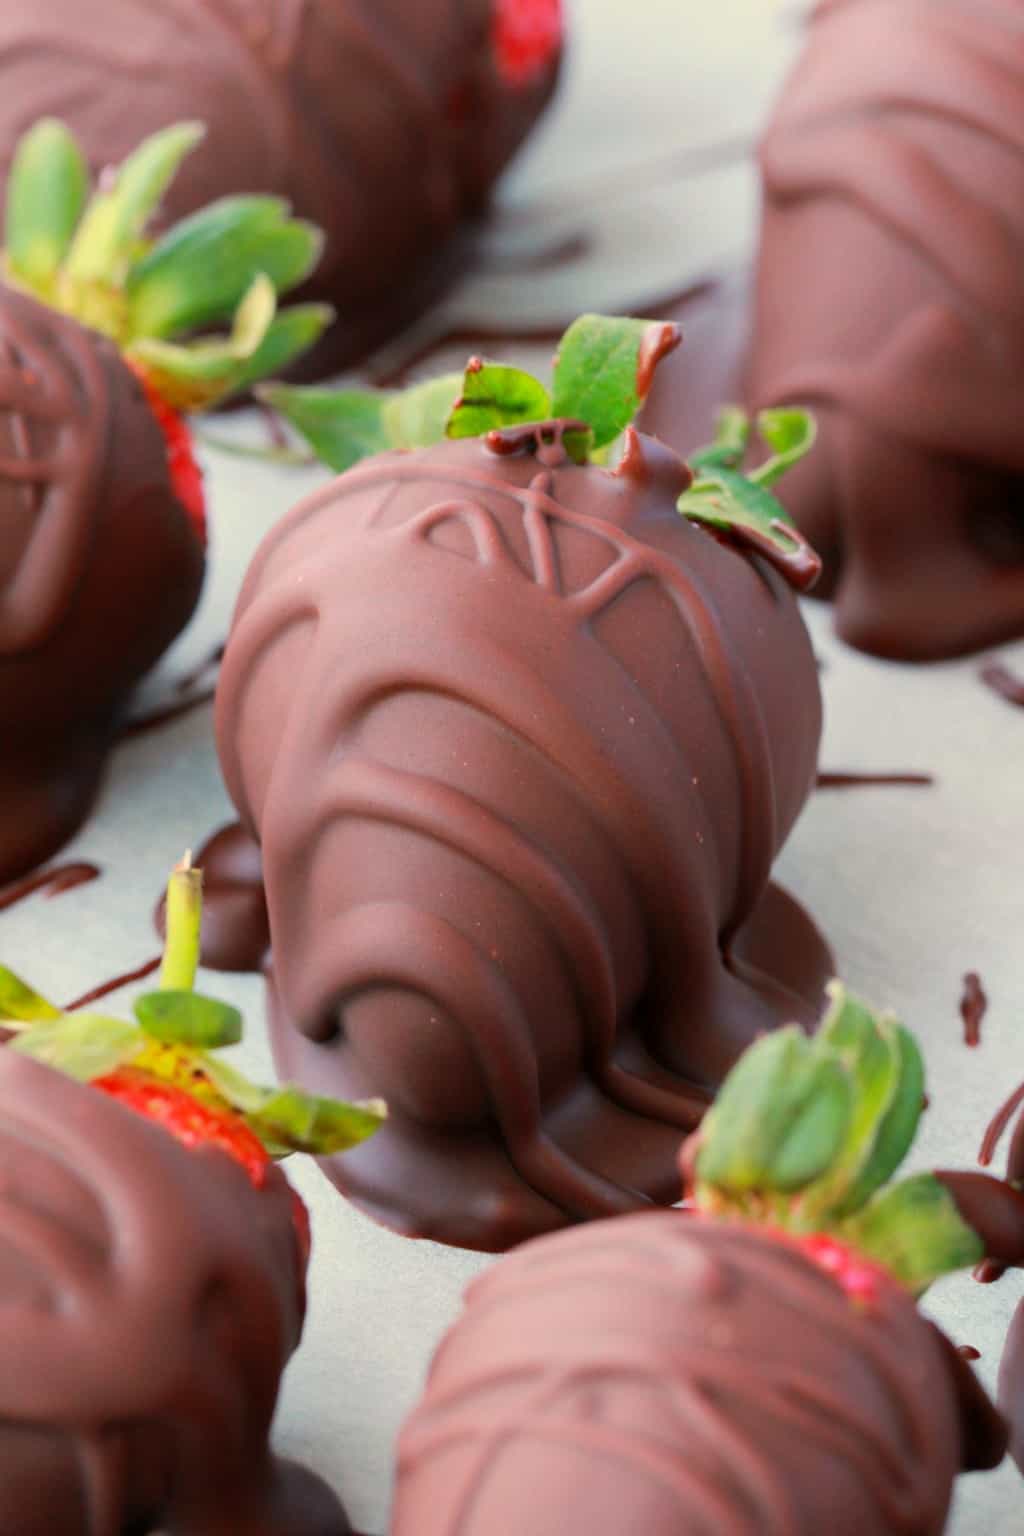  wegańskie truskawki pokryte czekoladą na pergaminie